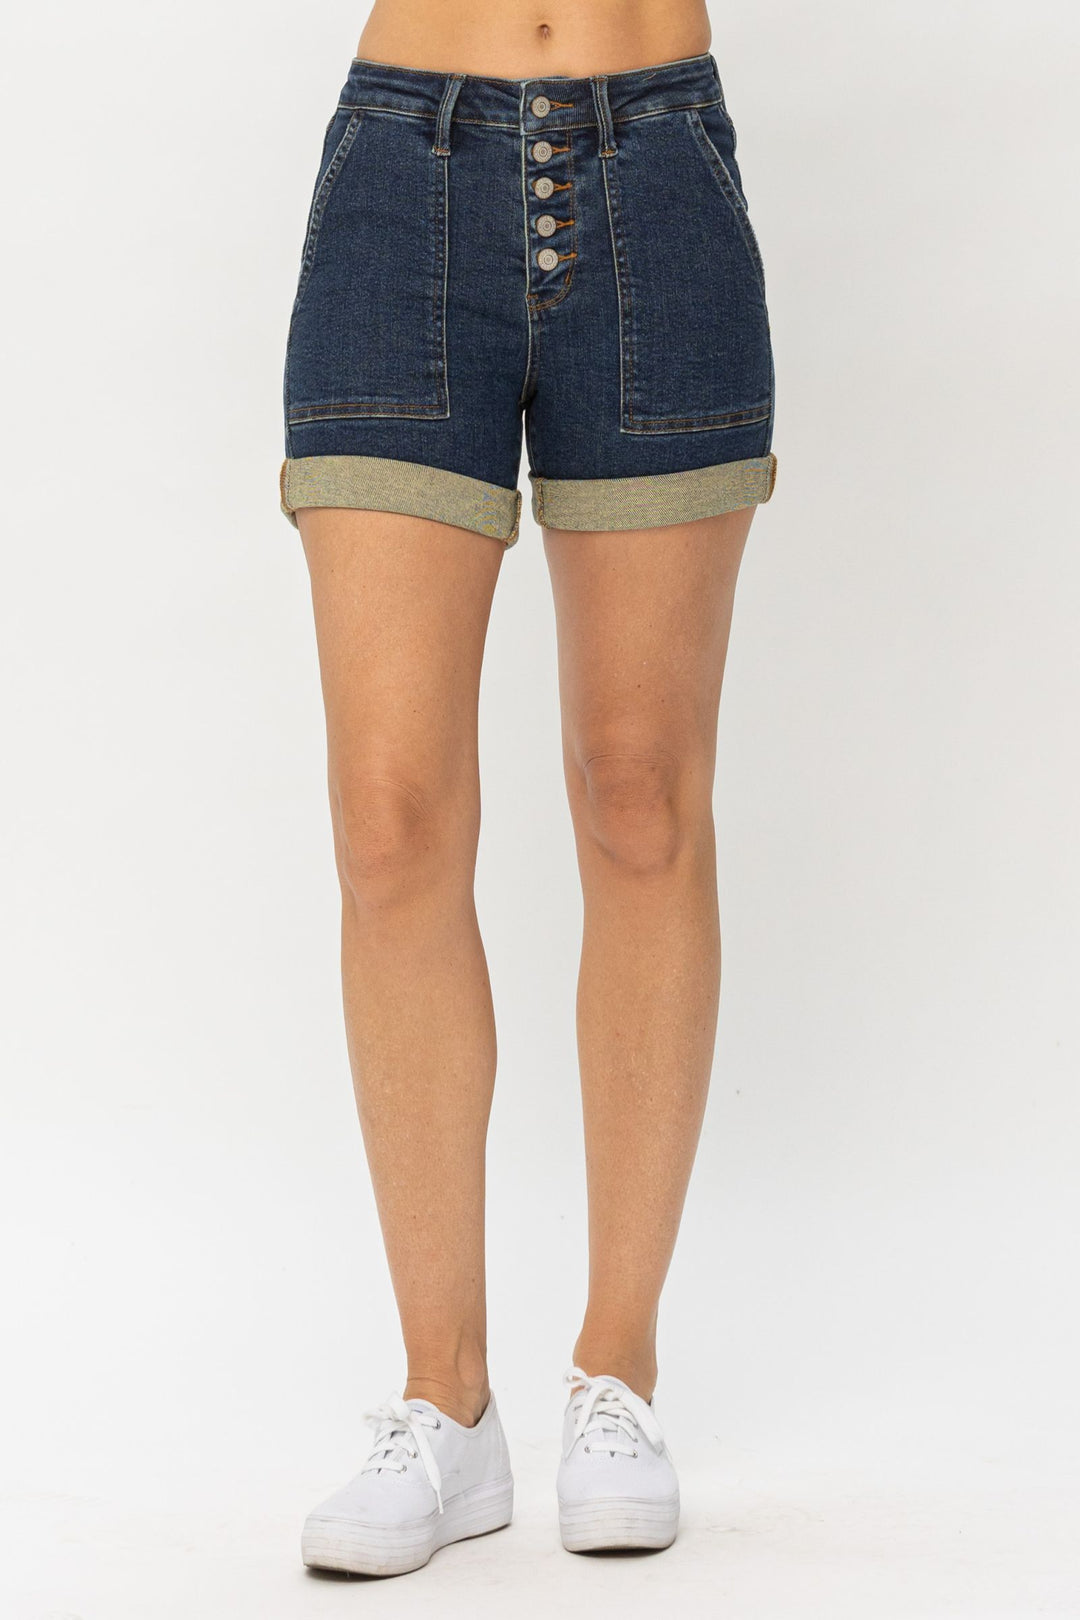 Judy Blue High Waist Button-fly Cuffed Trouser Shorts